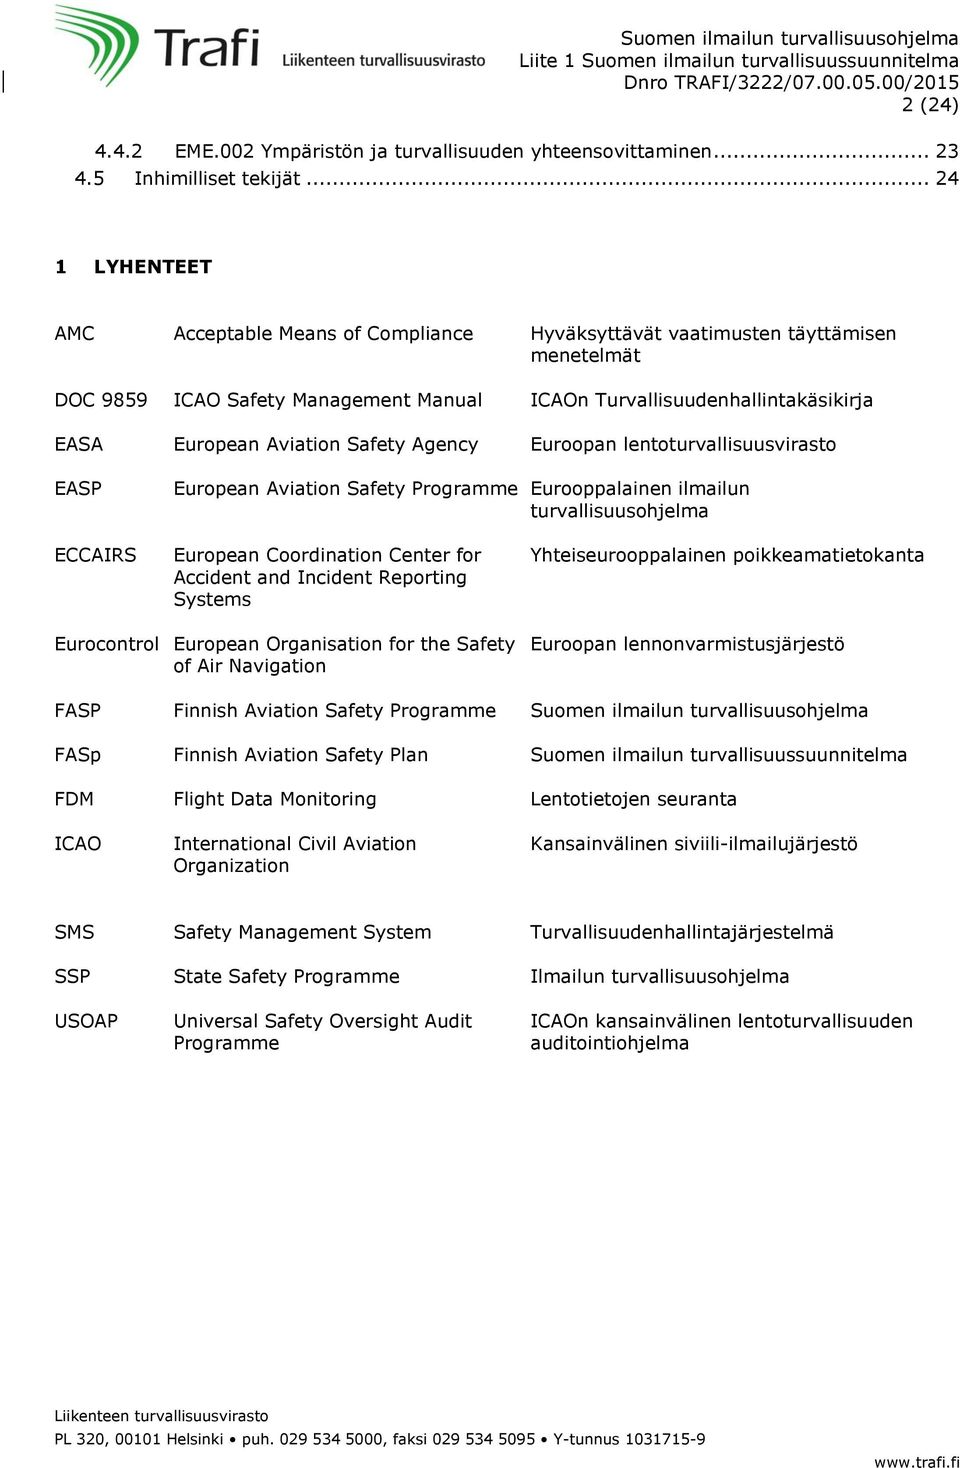 Aviation Safety Agency Euroopan lentoturvallisuusvirasto EASP European Aviation Safety Programme Eurooppalainen ilmailun turvallisuusohjelma ECCAIRS European Coordination Center for